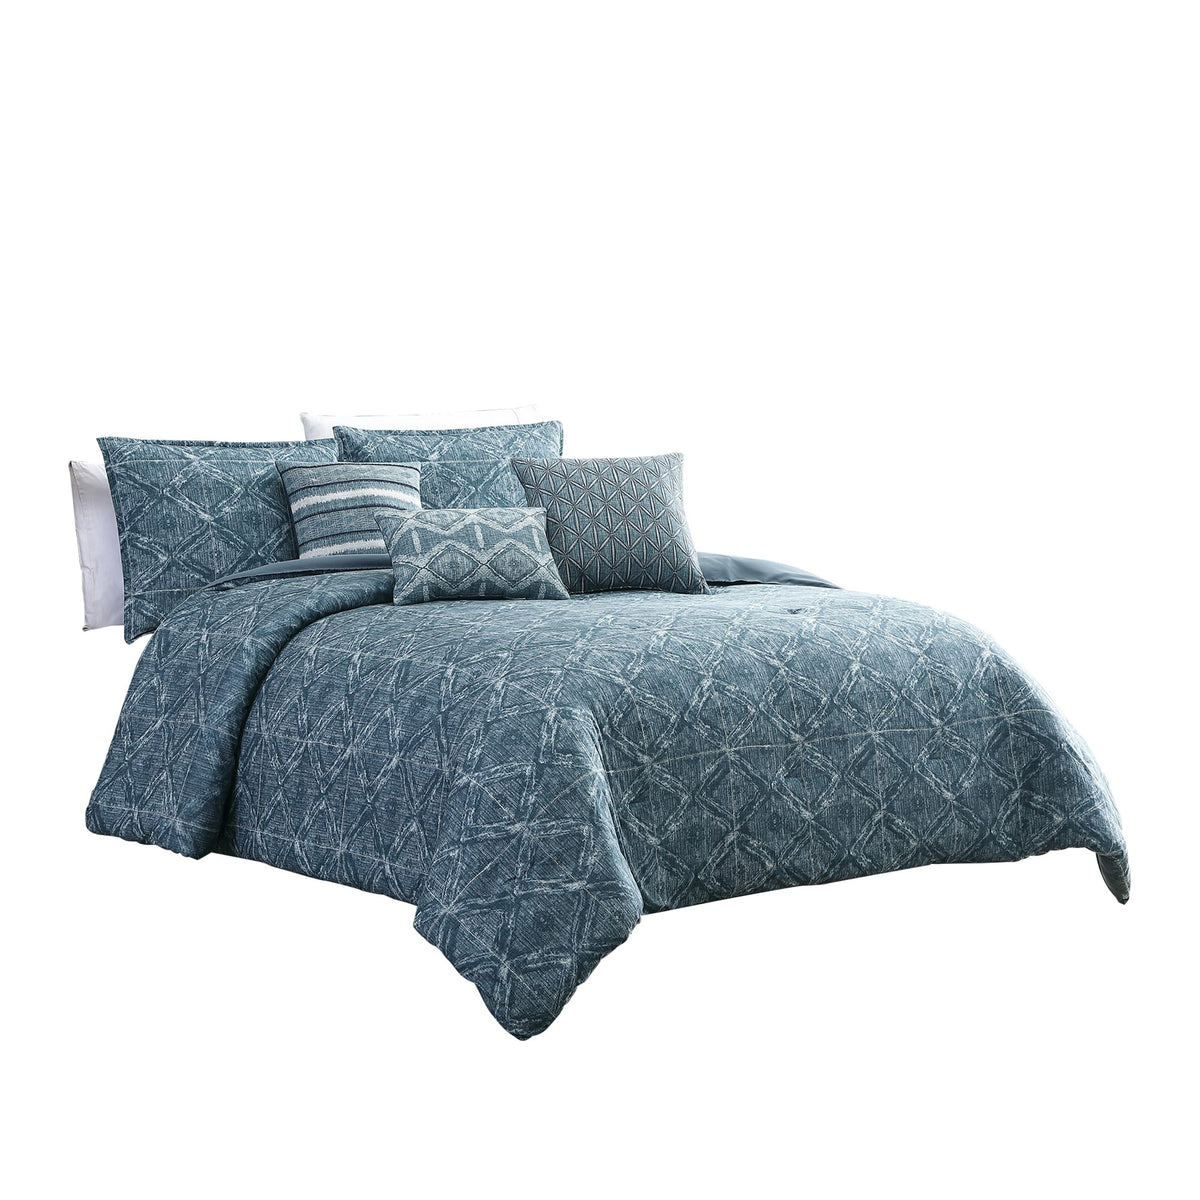 7 Piece Queen Size Cotton Comforter Set with Geometric Print, Blue - BM225144